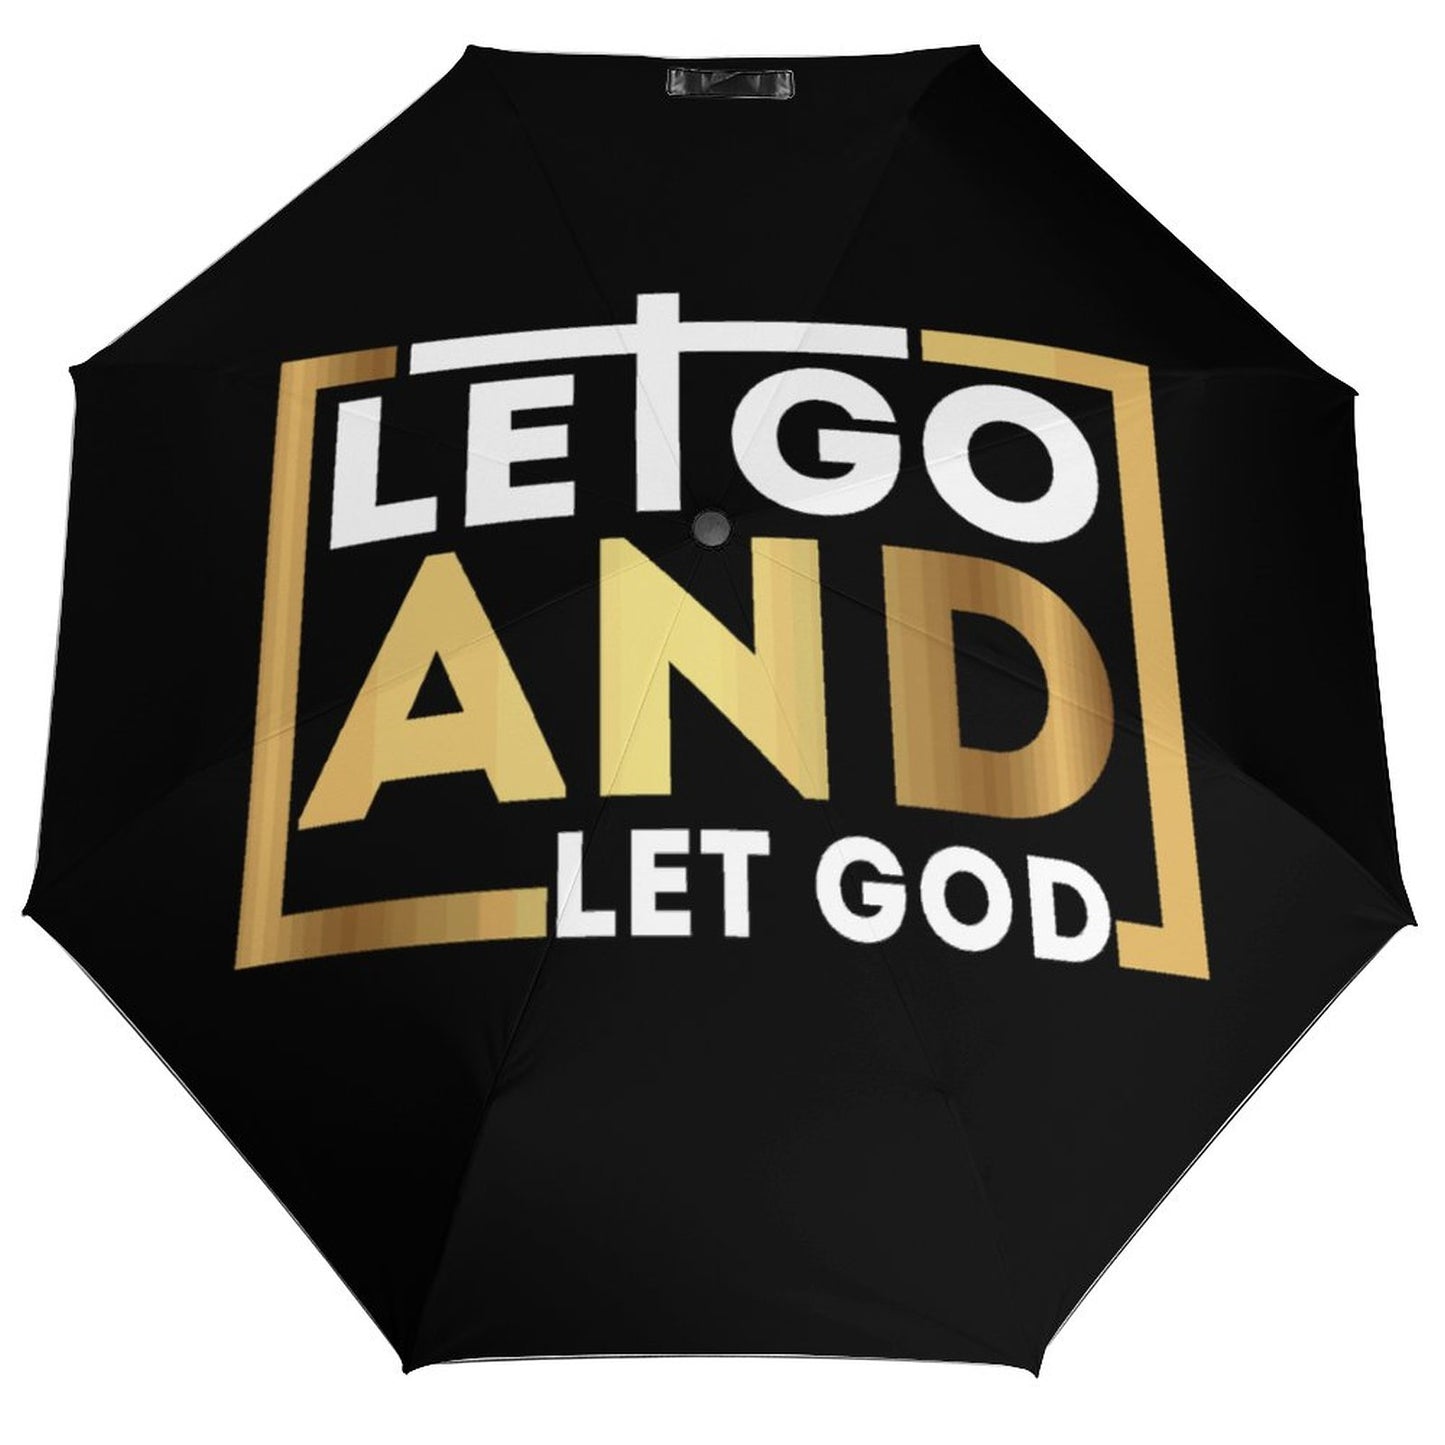 Let Go And Let God Christian Umbrella